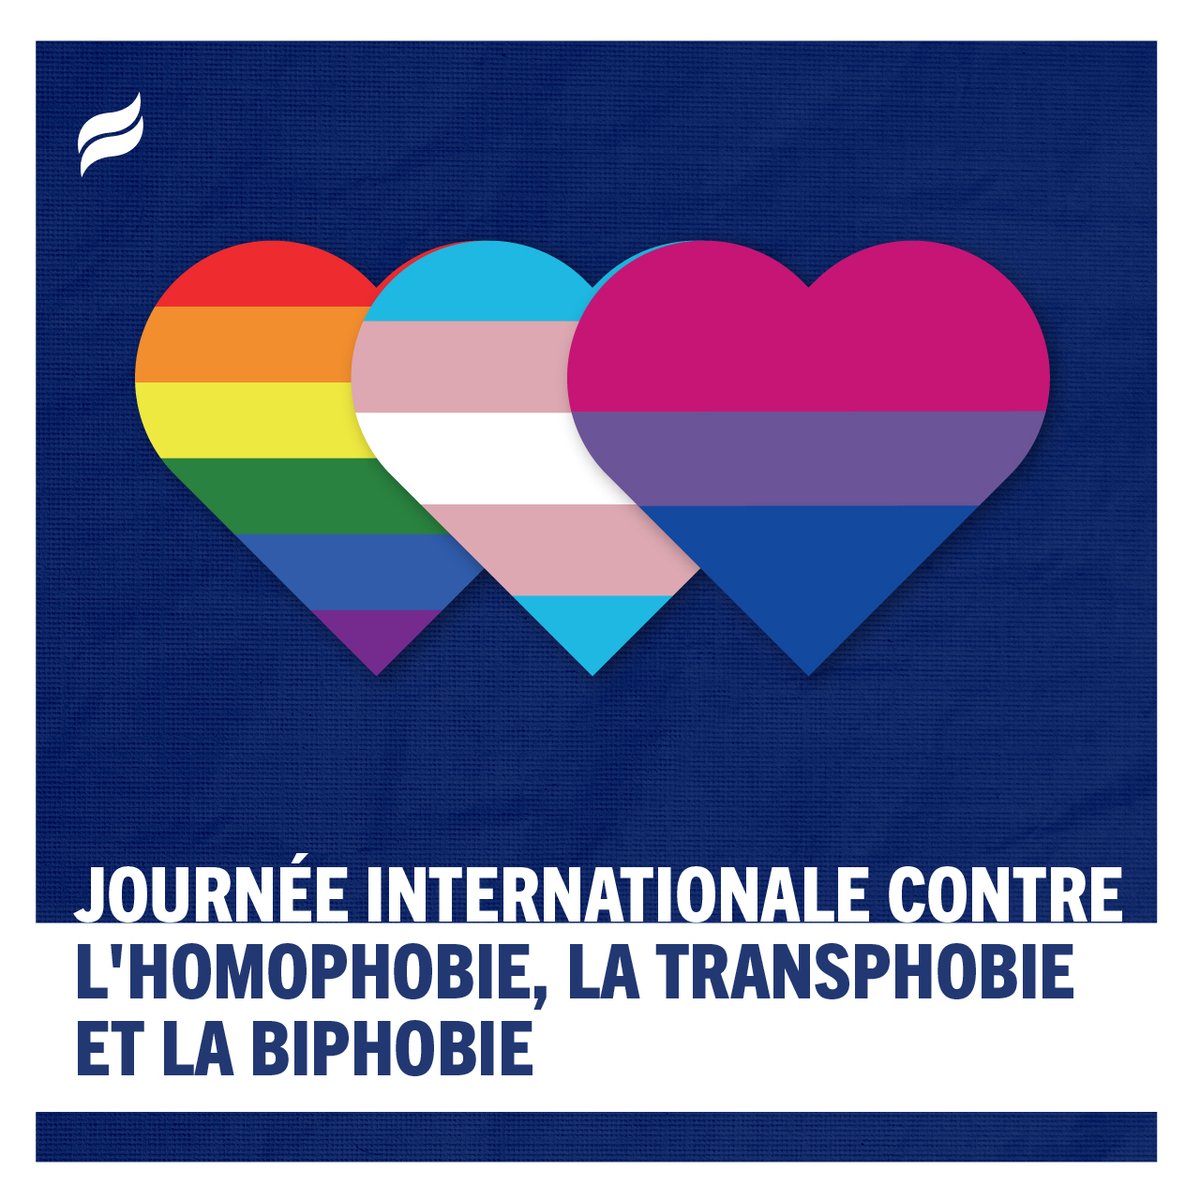 La Journée internationale contre l'homophobie, la transphobie et la biphobie, qui a lieu le 17 mai, est une journée importante consacrée à la sensibilisation à la discrimination et à la violence subies par la communauté LGBTQIA2+ dans le monde entier. (1/2)